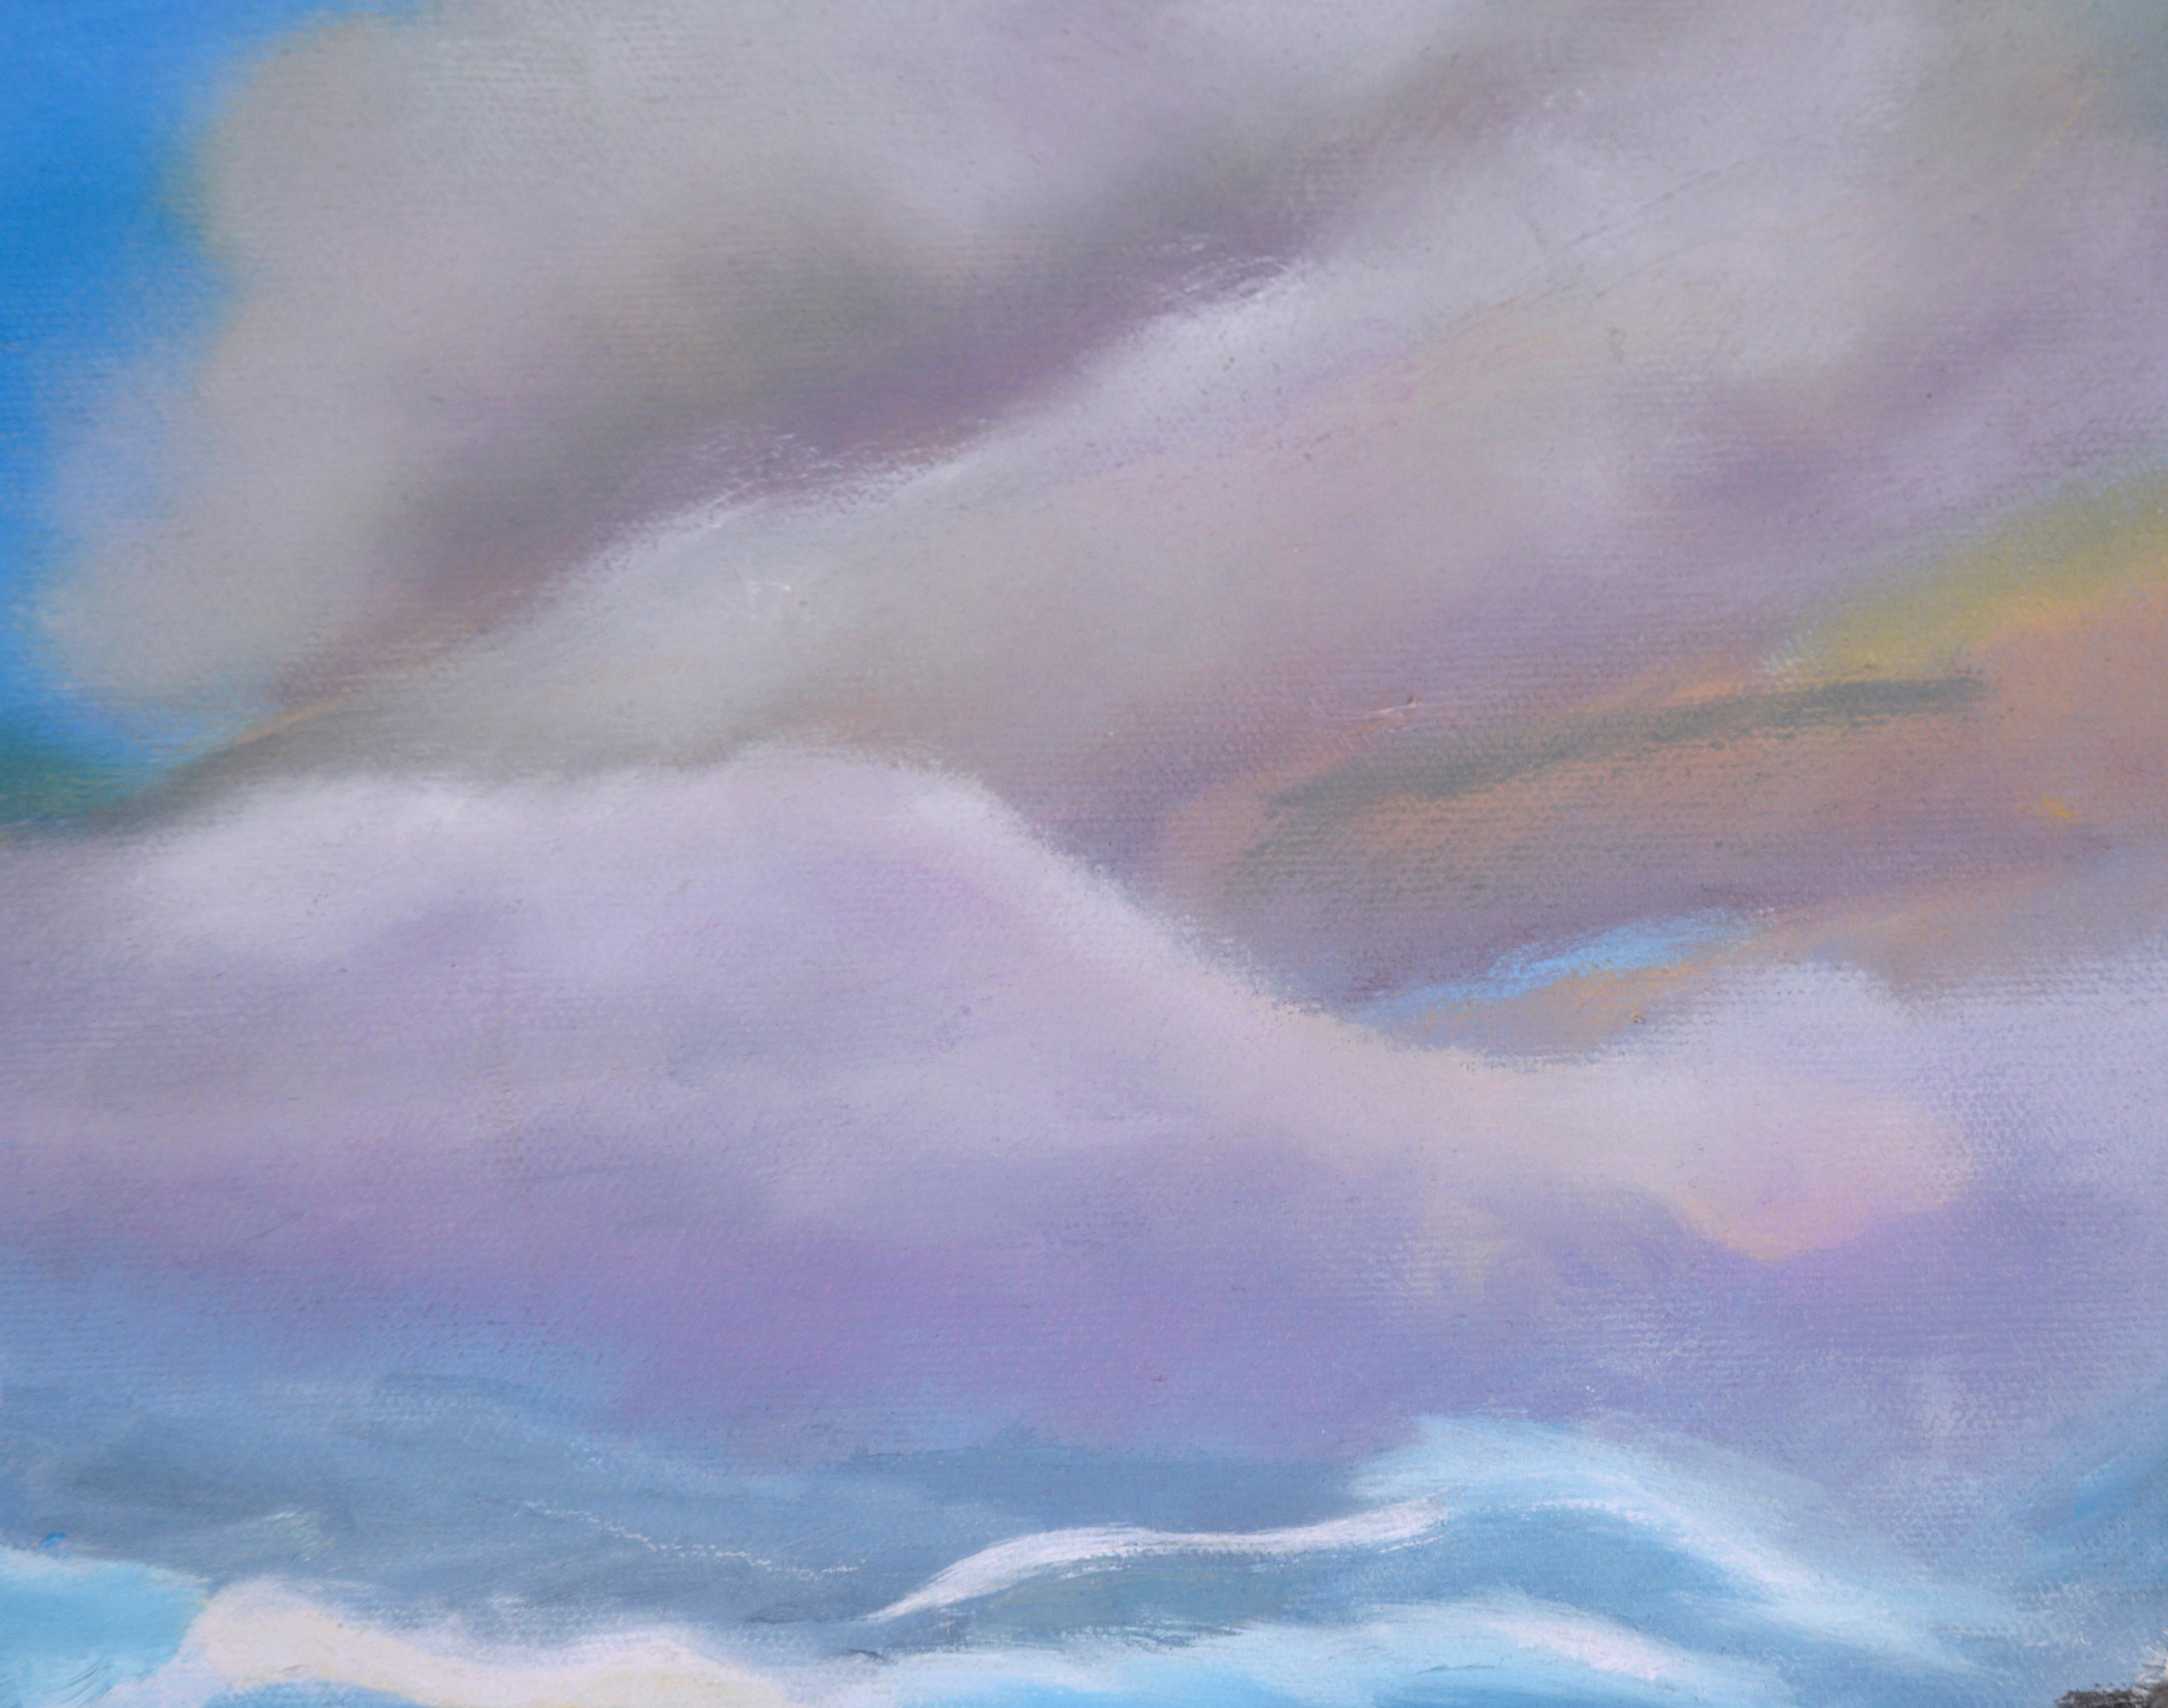 Waves Crashing Under Purple Clouds – Meereslandschaft, Original, Öl auf Leinwand

Glühende Meereslandschaft von Mai Tracy Kikuchi (20. Jahrhundert). Große Wellen rollen heran, die in hellblau dargestellt sind, was auf Durchsichtigkeit hindeutet. Die